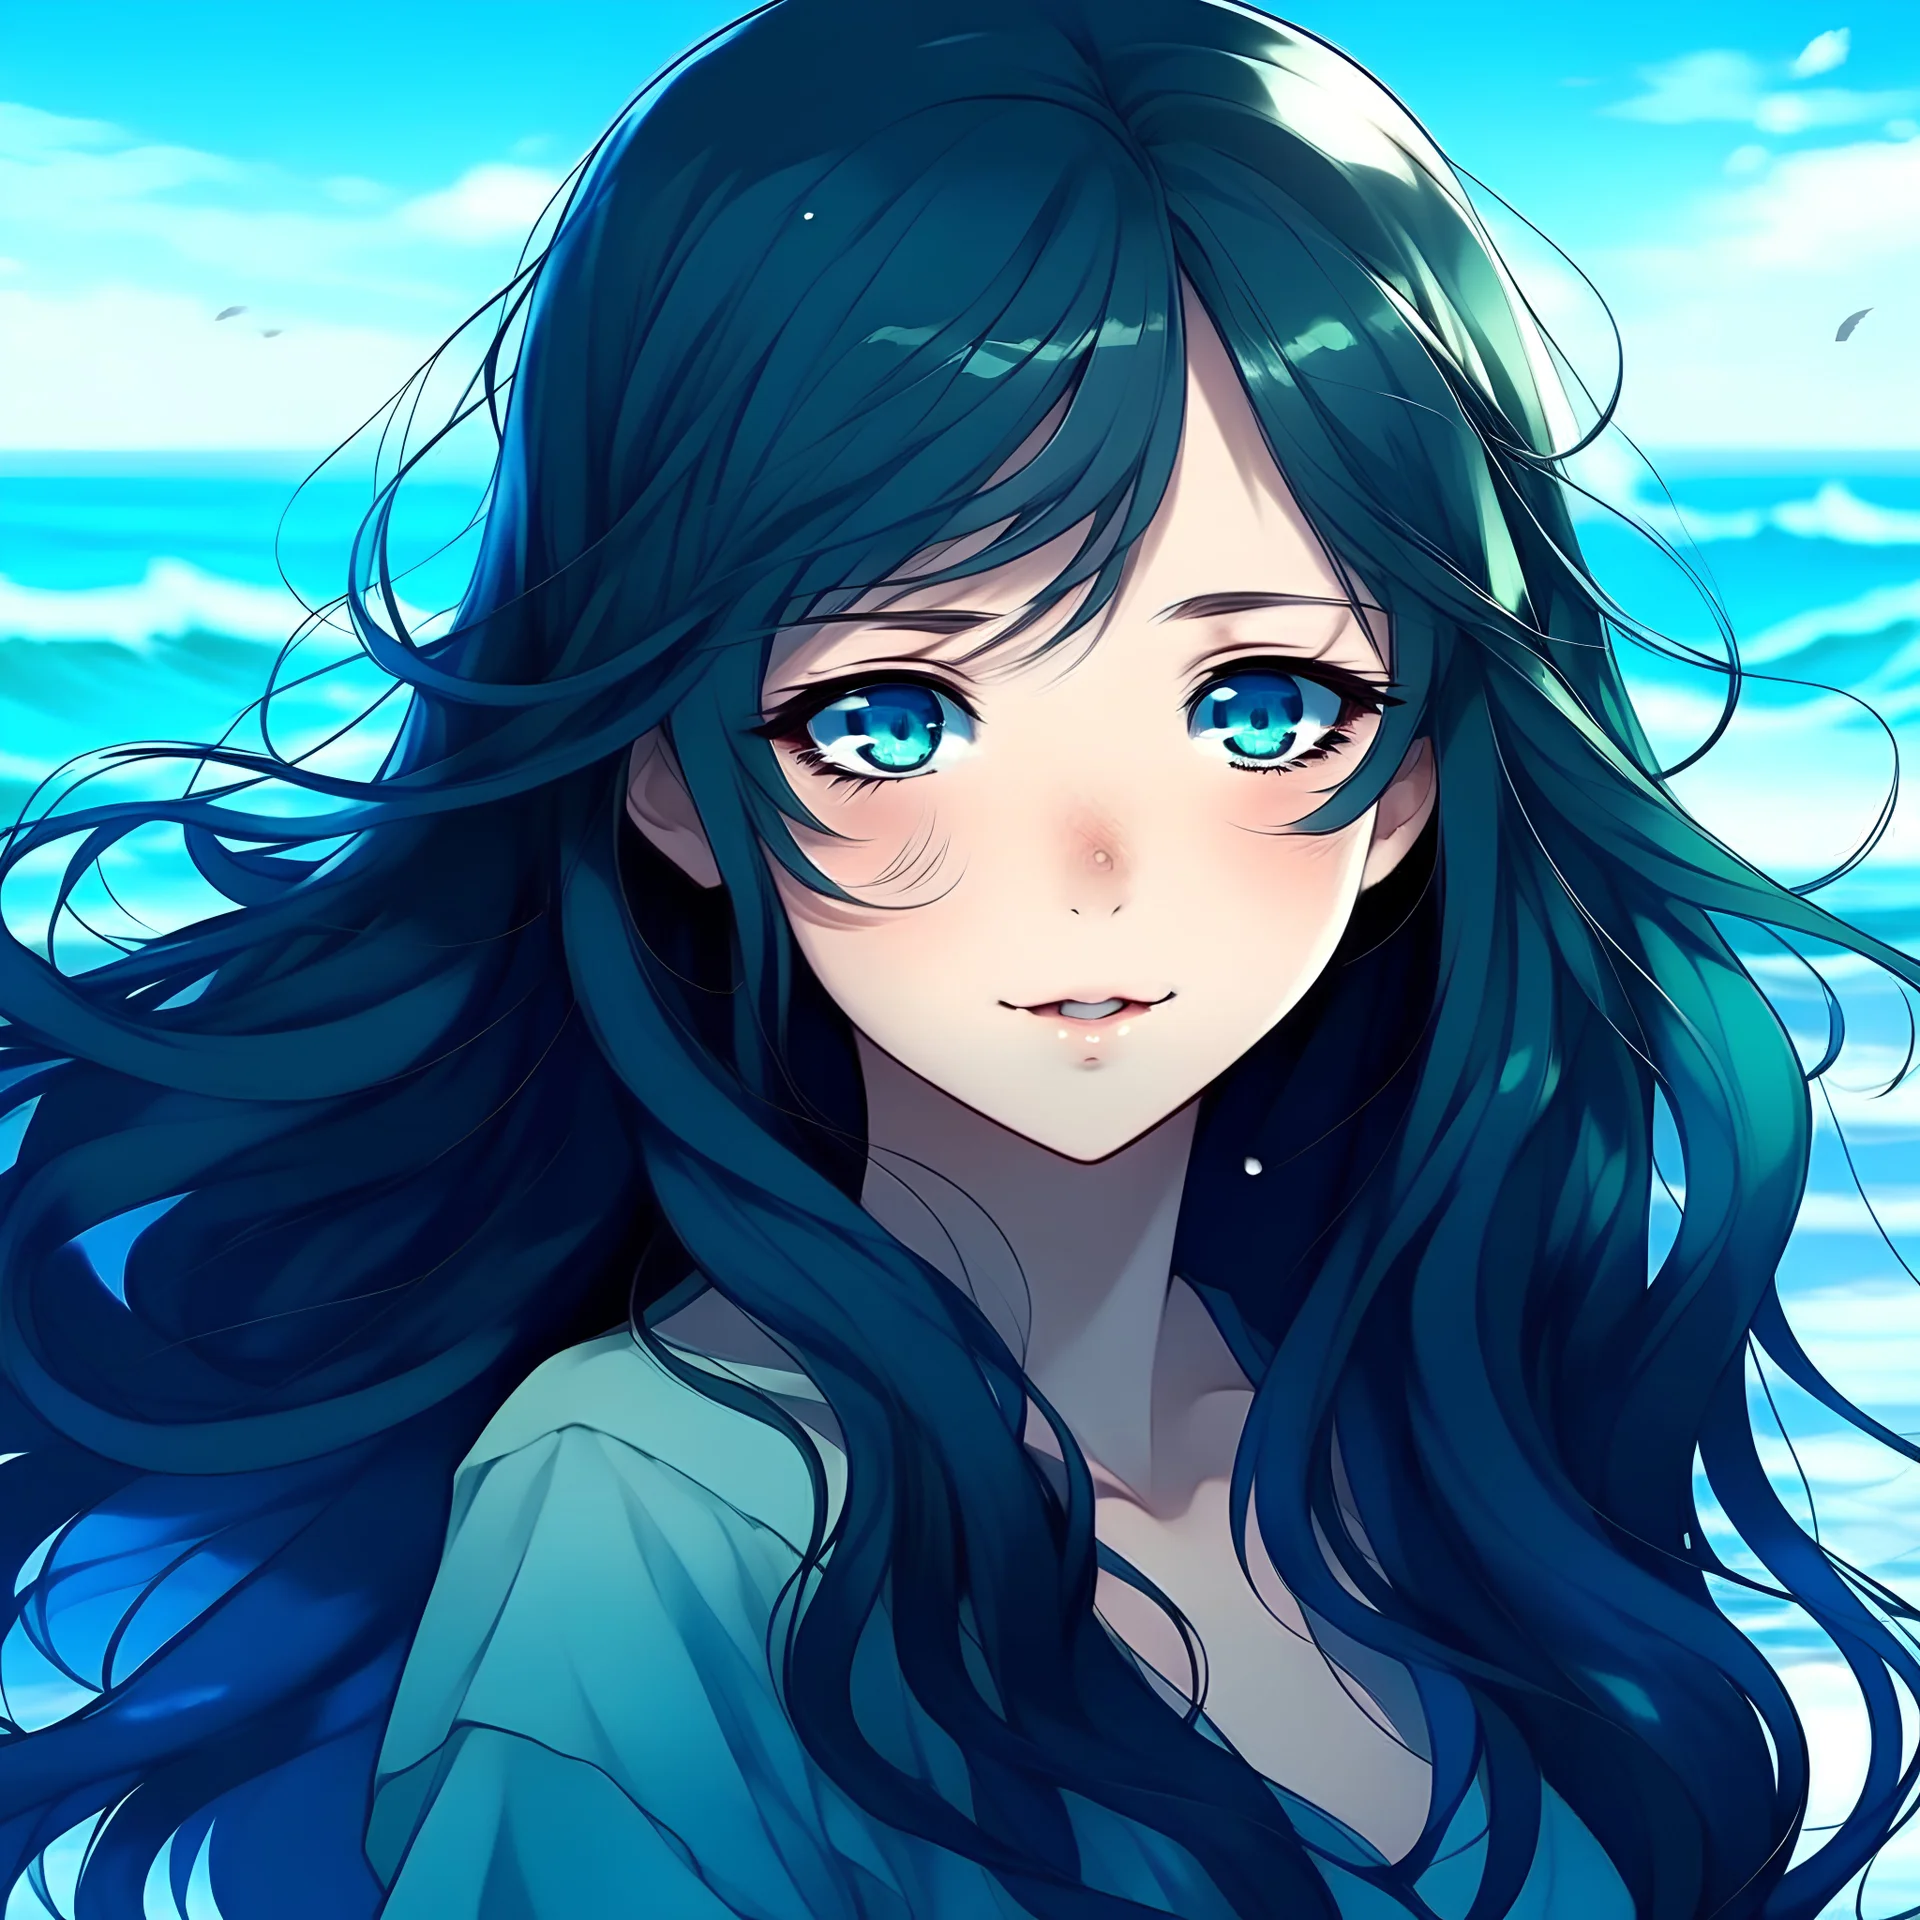 Teenage girl, long wavy black hair, ocean blue eyes, anime style